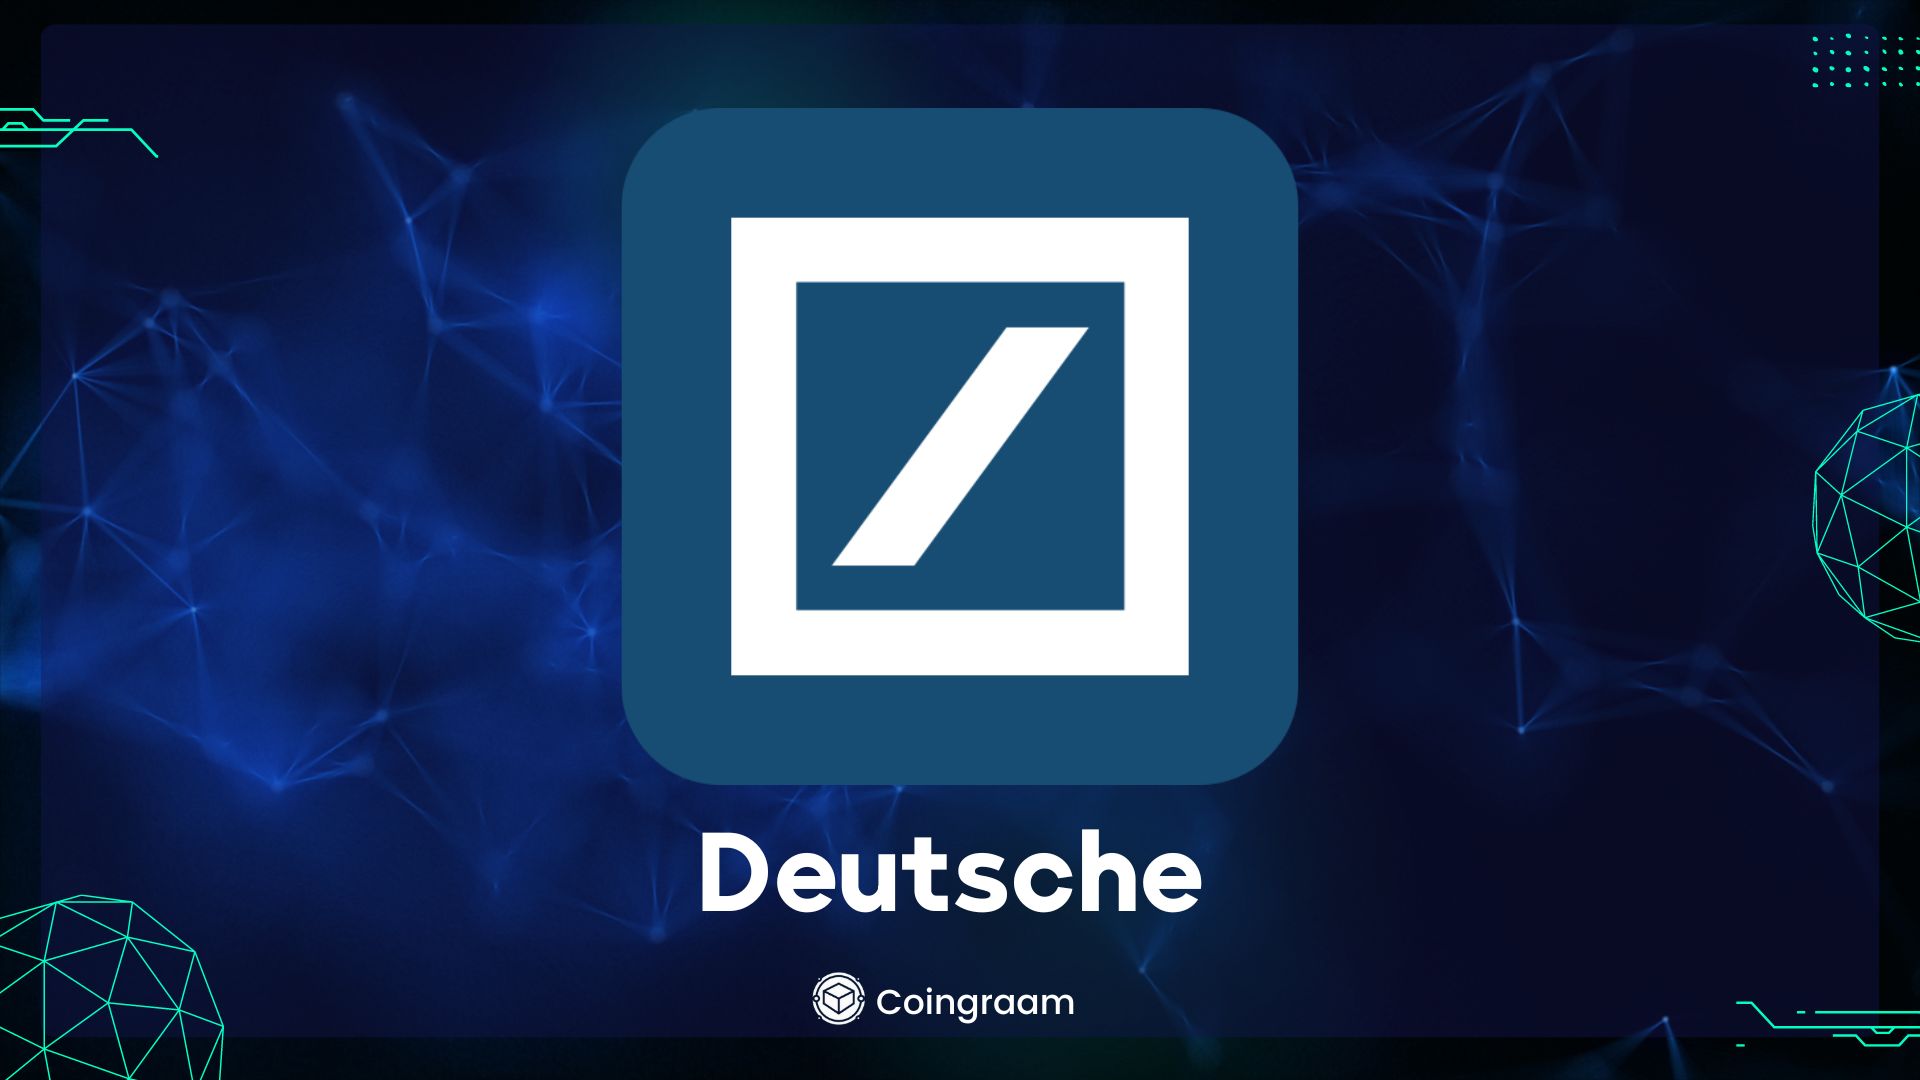  بانک Deutsche به جدیدترین غول بانکی تبدیل شد که سعی در ورود به دنیای ارزهای دیجیتال دارد